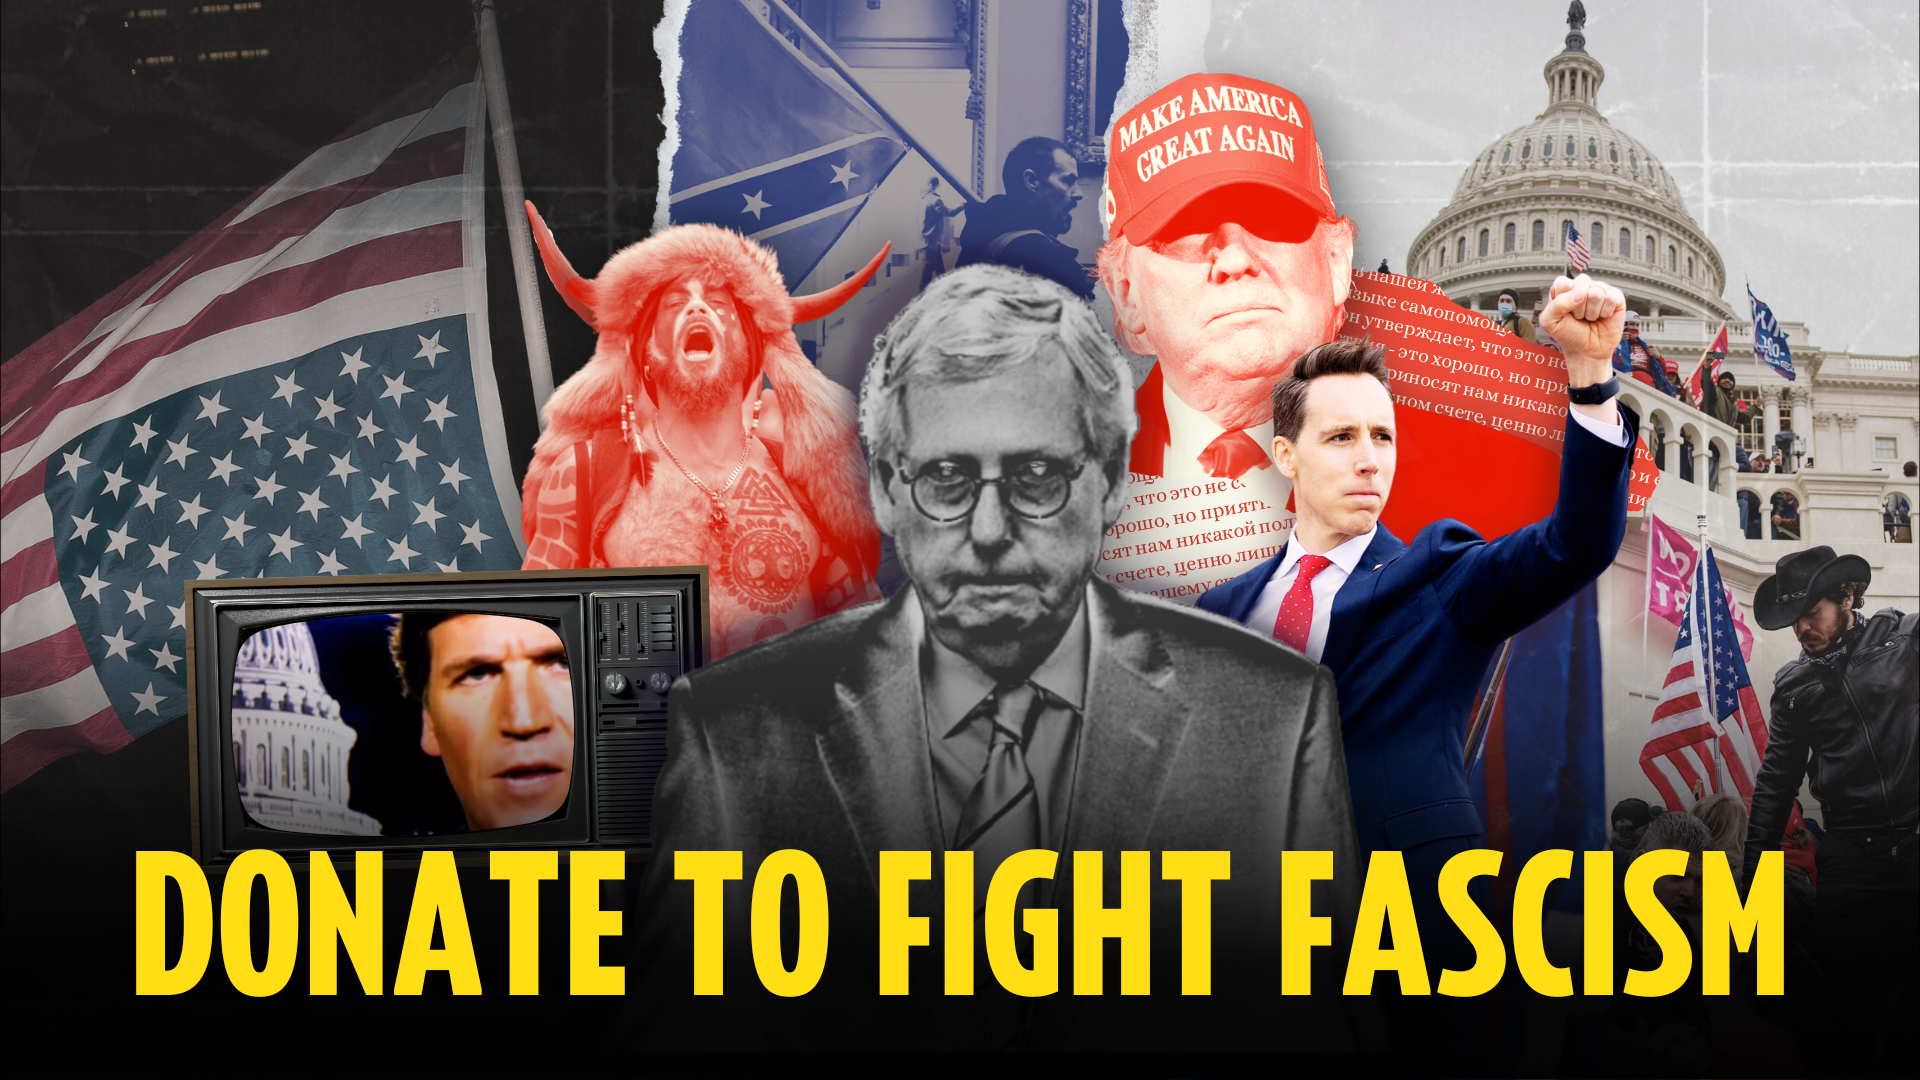 Doe para Combater o Fascismo; Colagem de símbolos e líderes fascistas